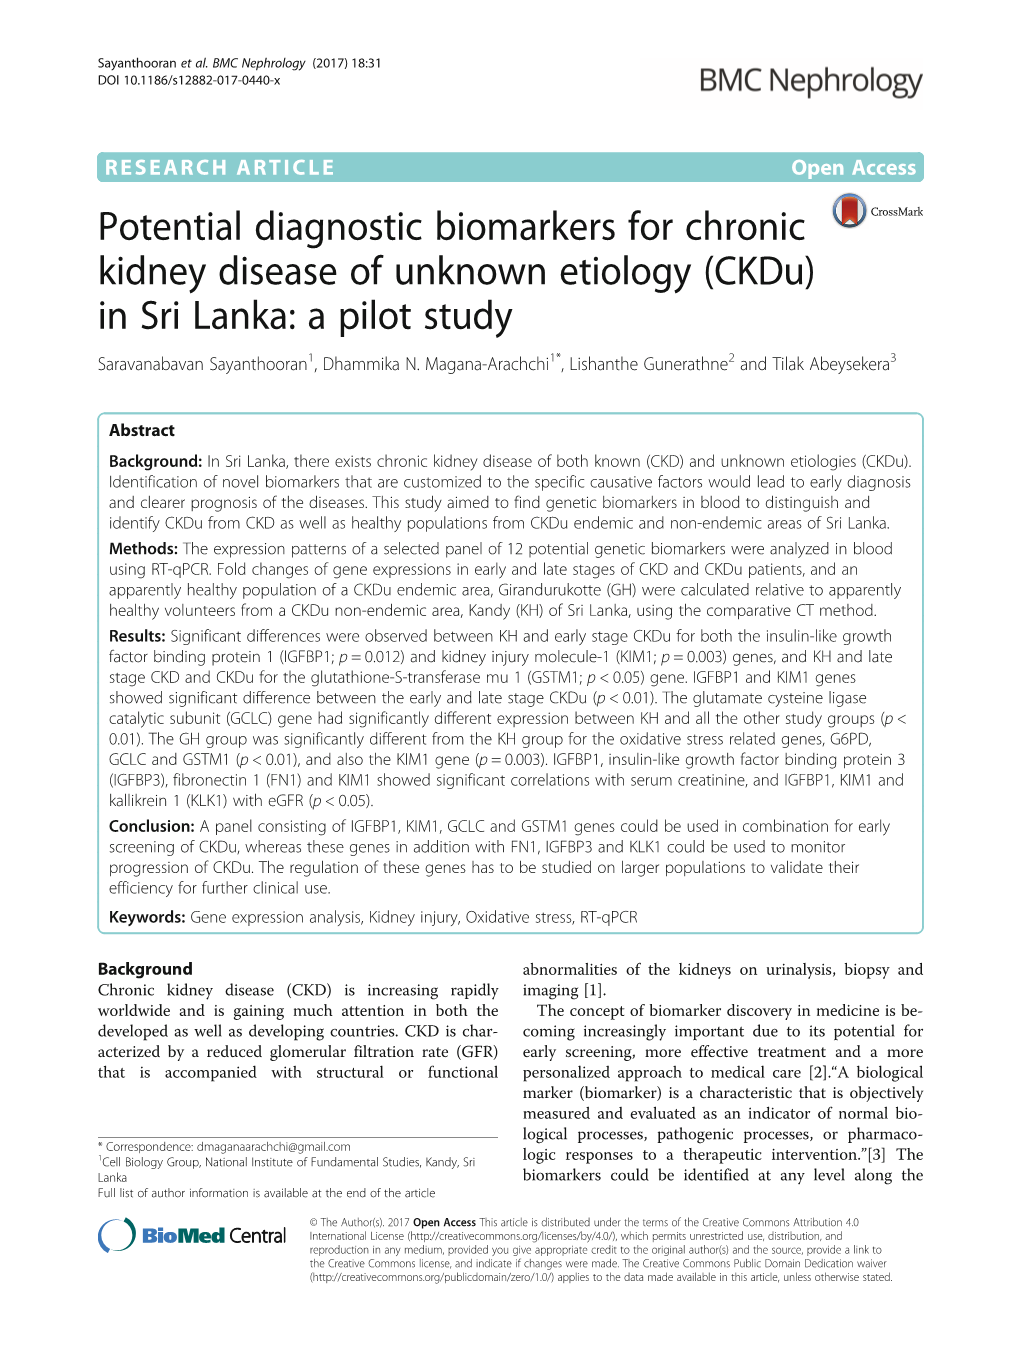 Potential Diagnostic Biomarkers for Chronic Kidney Disease of Unknown Etiology (Ckdu) in Sri Lanka: a Pilot Study Saravanabavan Sayanthooran1, Dhammika N